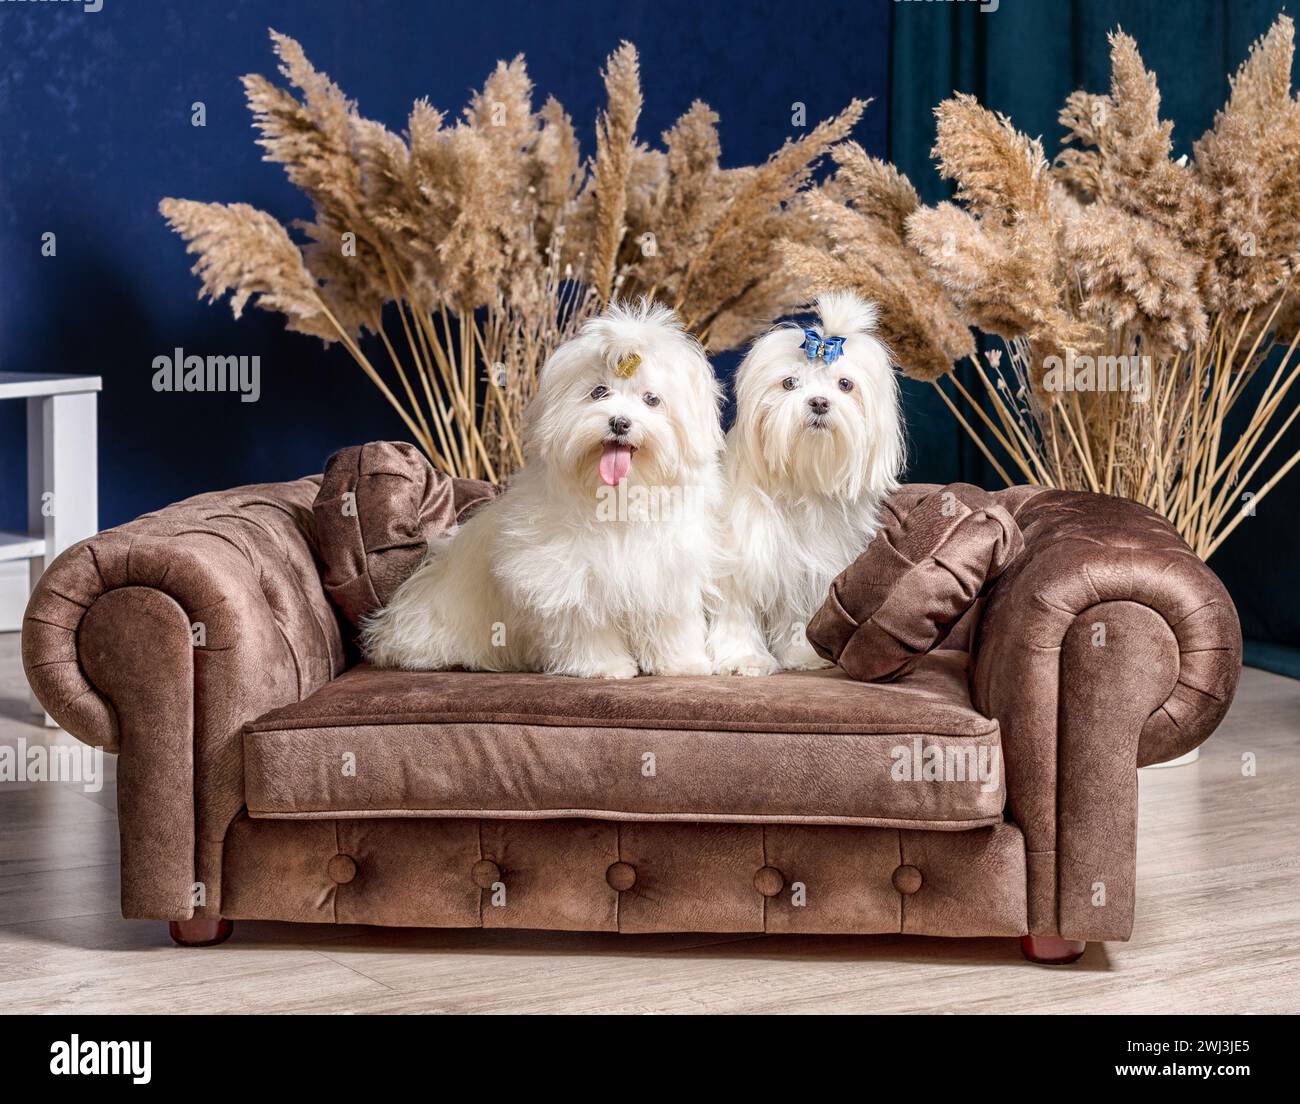 Zwei weiße Shih-Tzu-Hunde auf einem luxuriösen Sofa in einem Zimmer mit trockenen Pflanzen und blauen Wänden Stockfoto